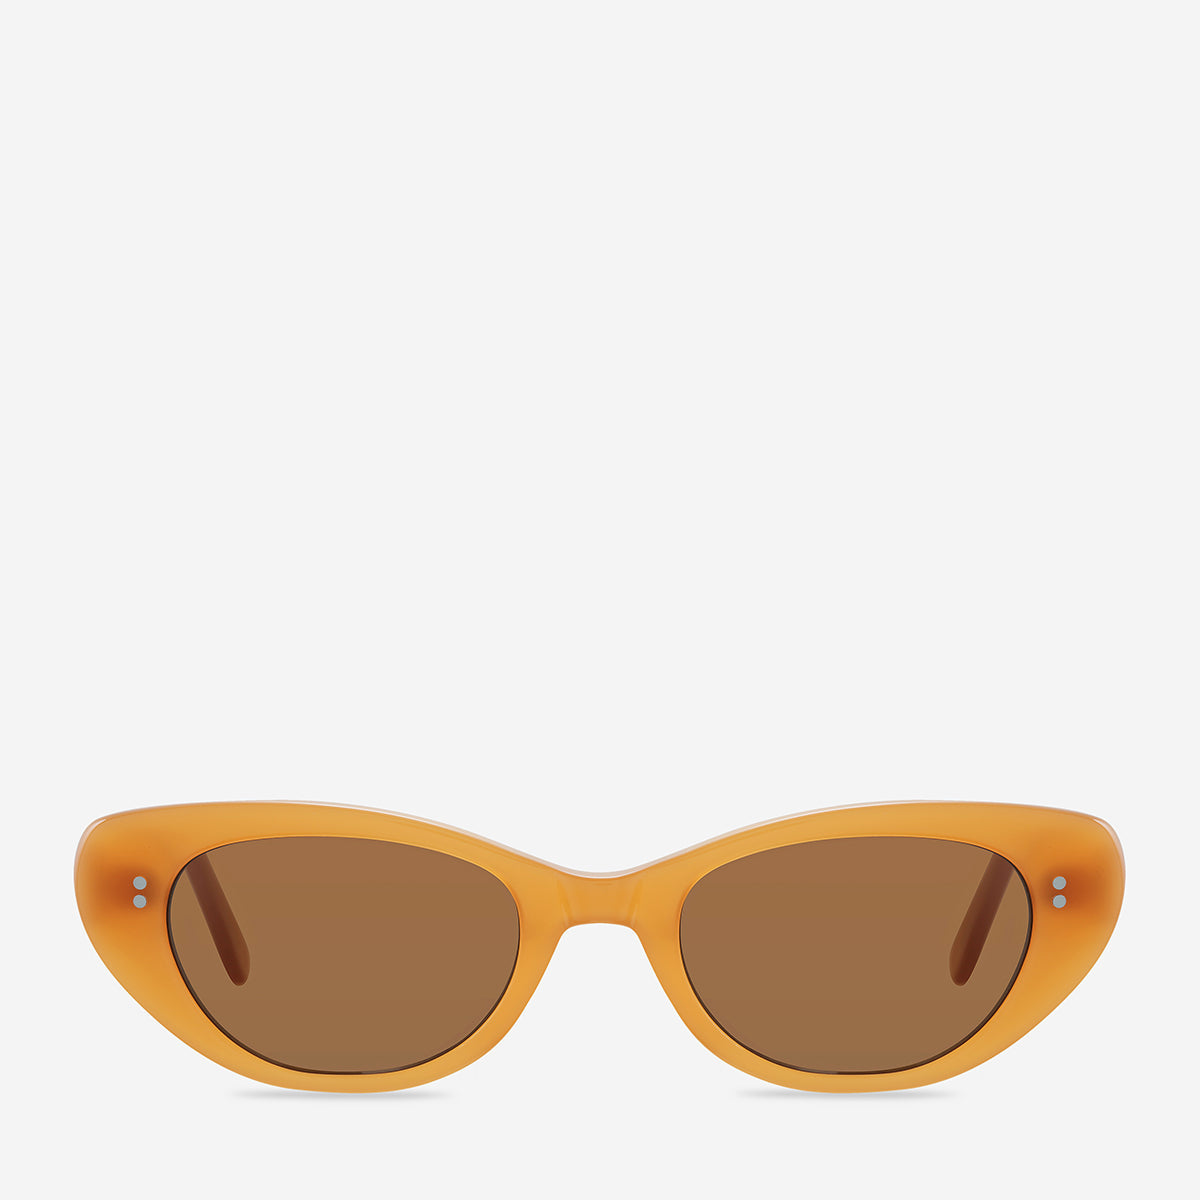 Wonderment - Unisex Polarised Sunglasses